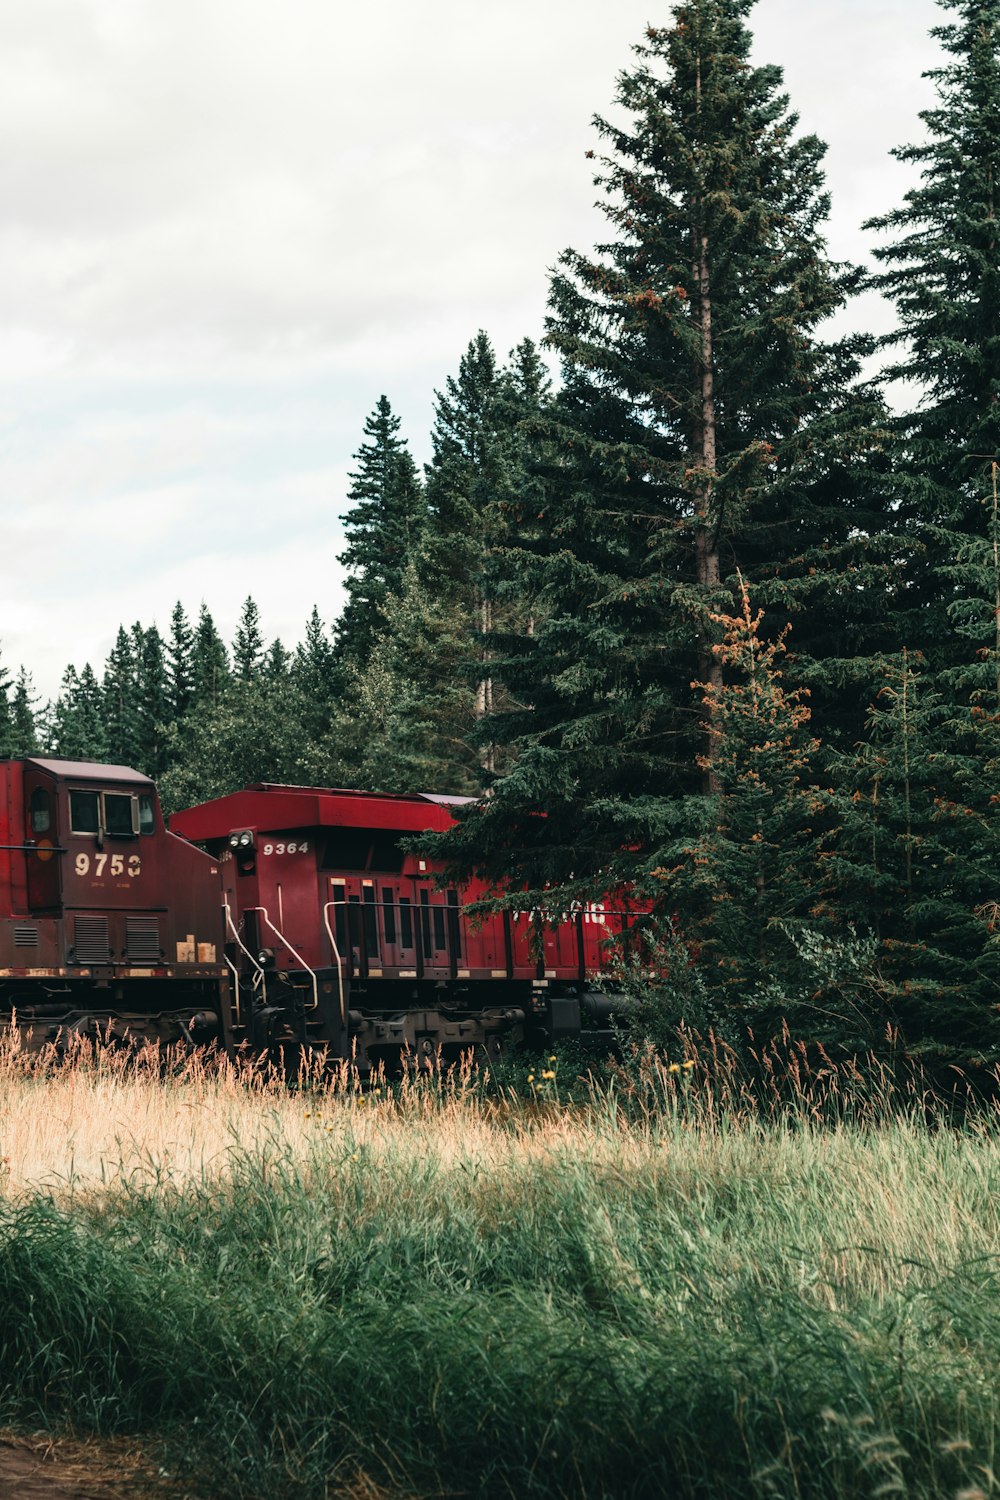 Un train rouge traversant une forêt verdoyante